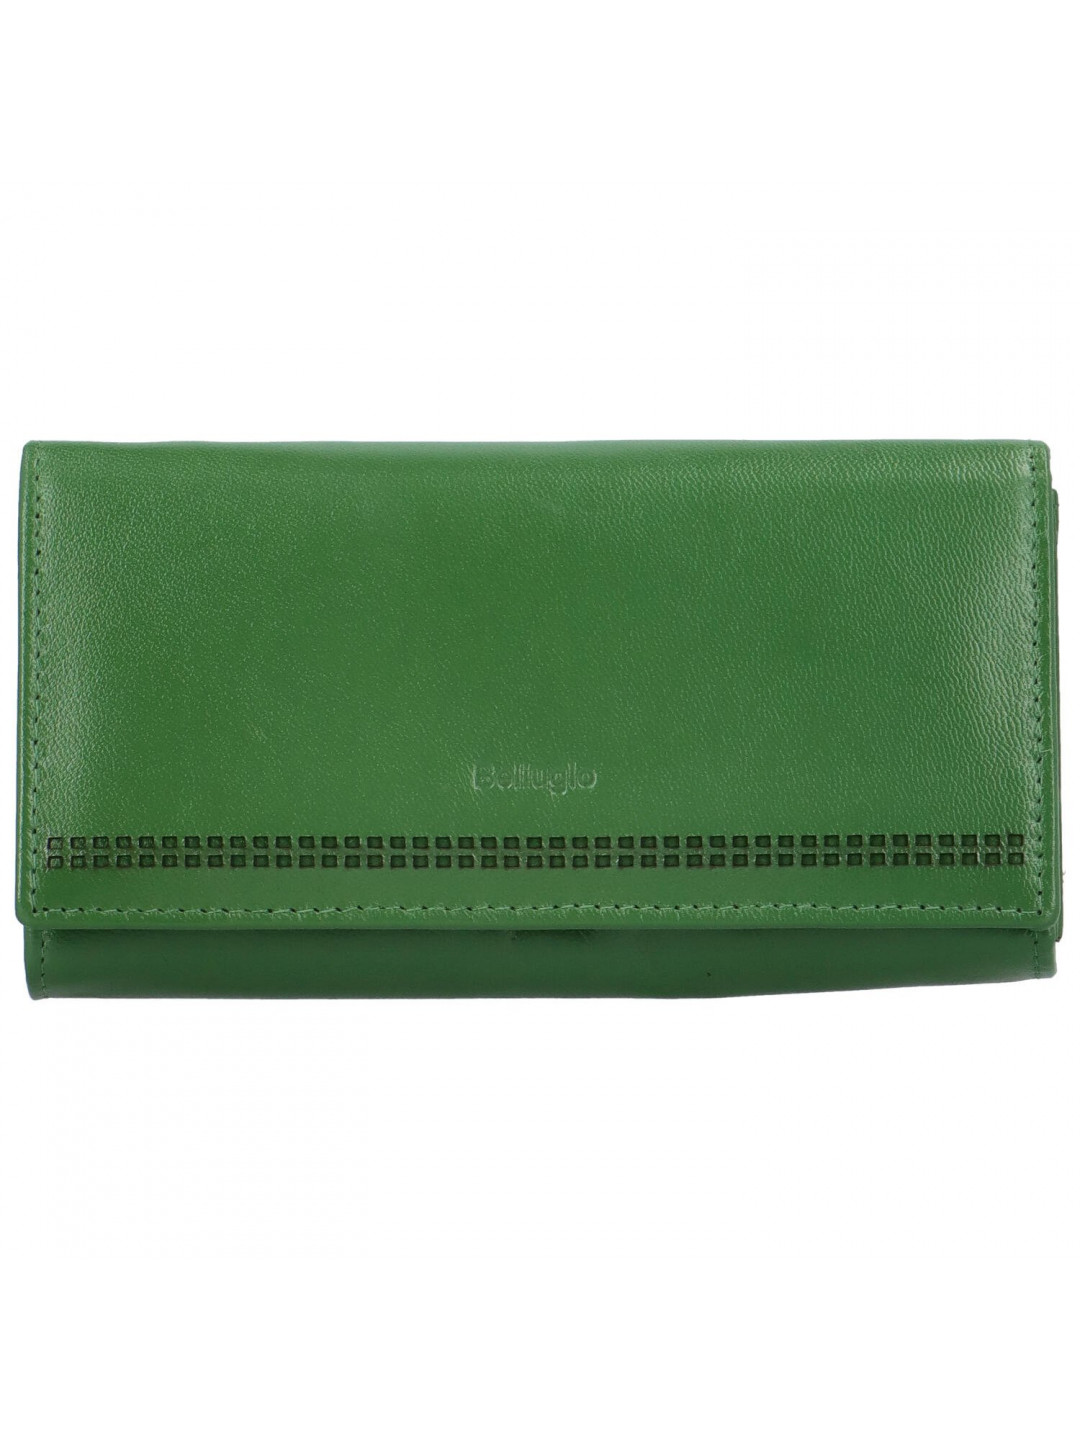 Trendy velká dámská peněženka Bellugio Loprina zelená